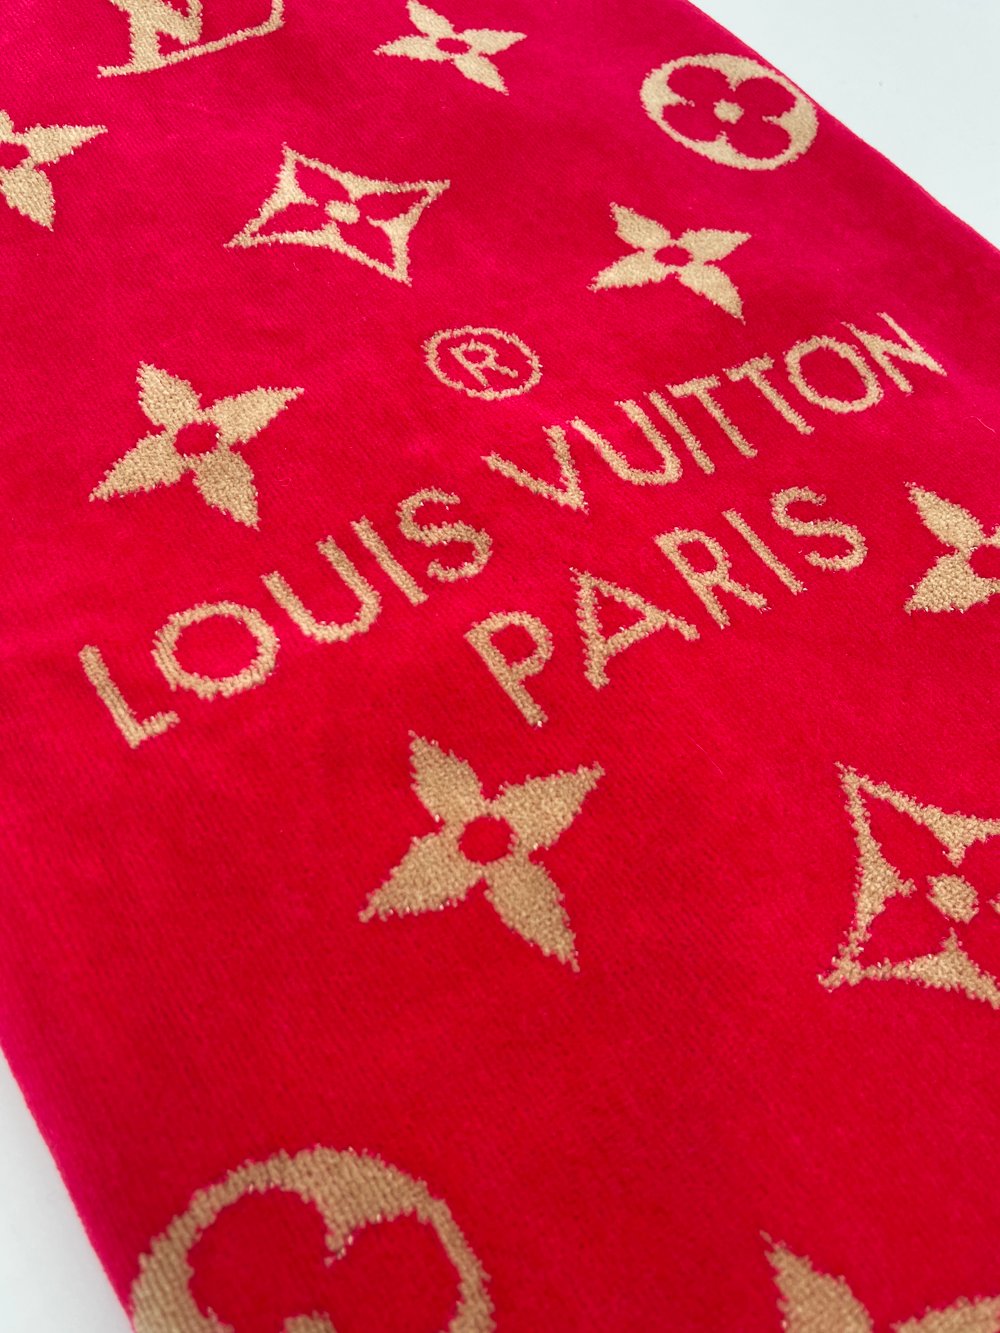 Louis Vuitton pink Cotton Beach Towel (95cm x 150cm)